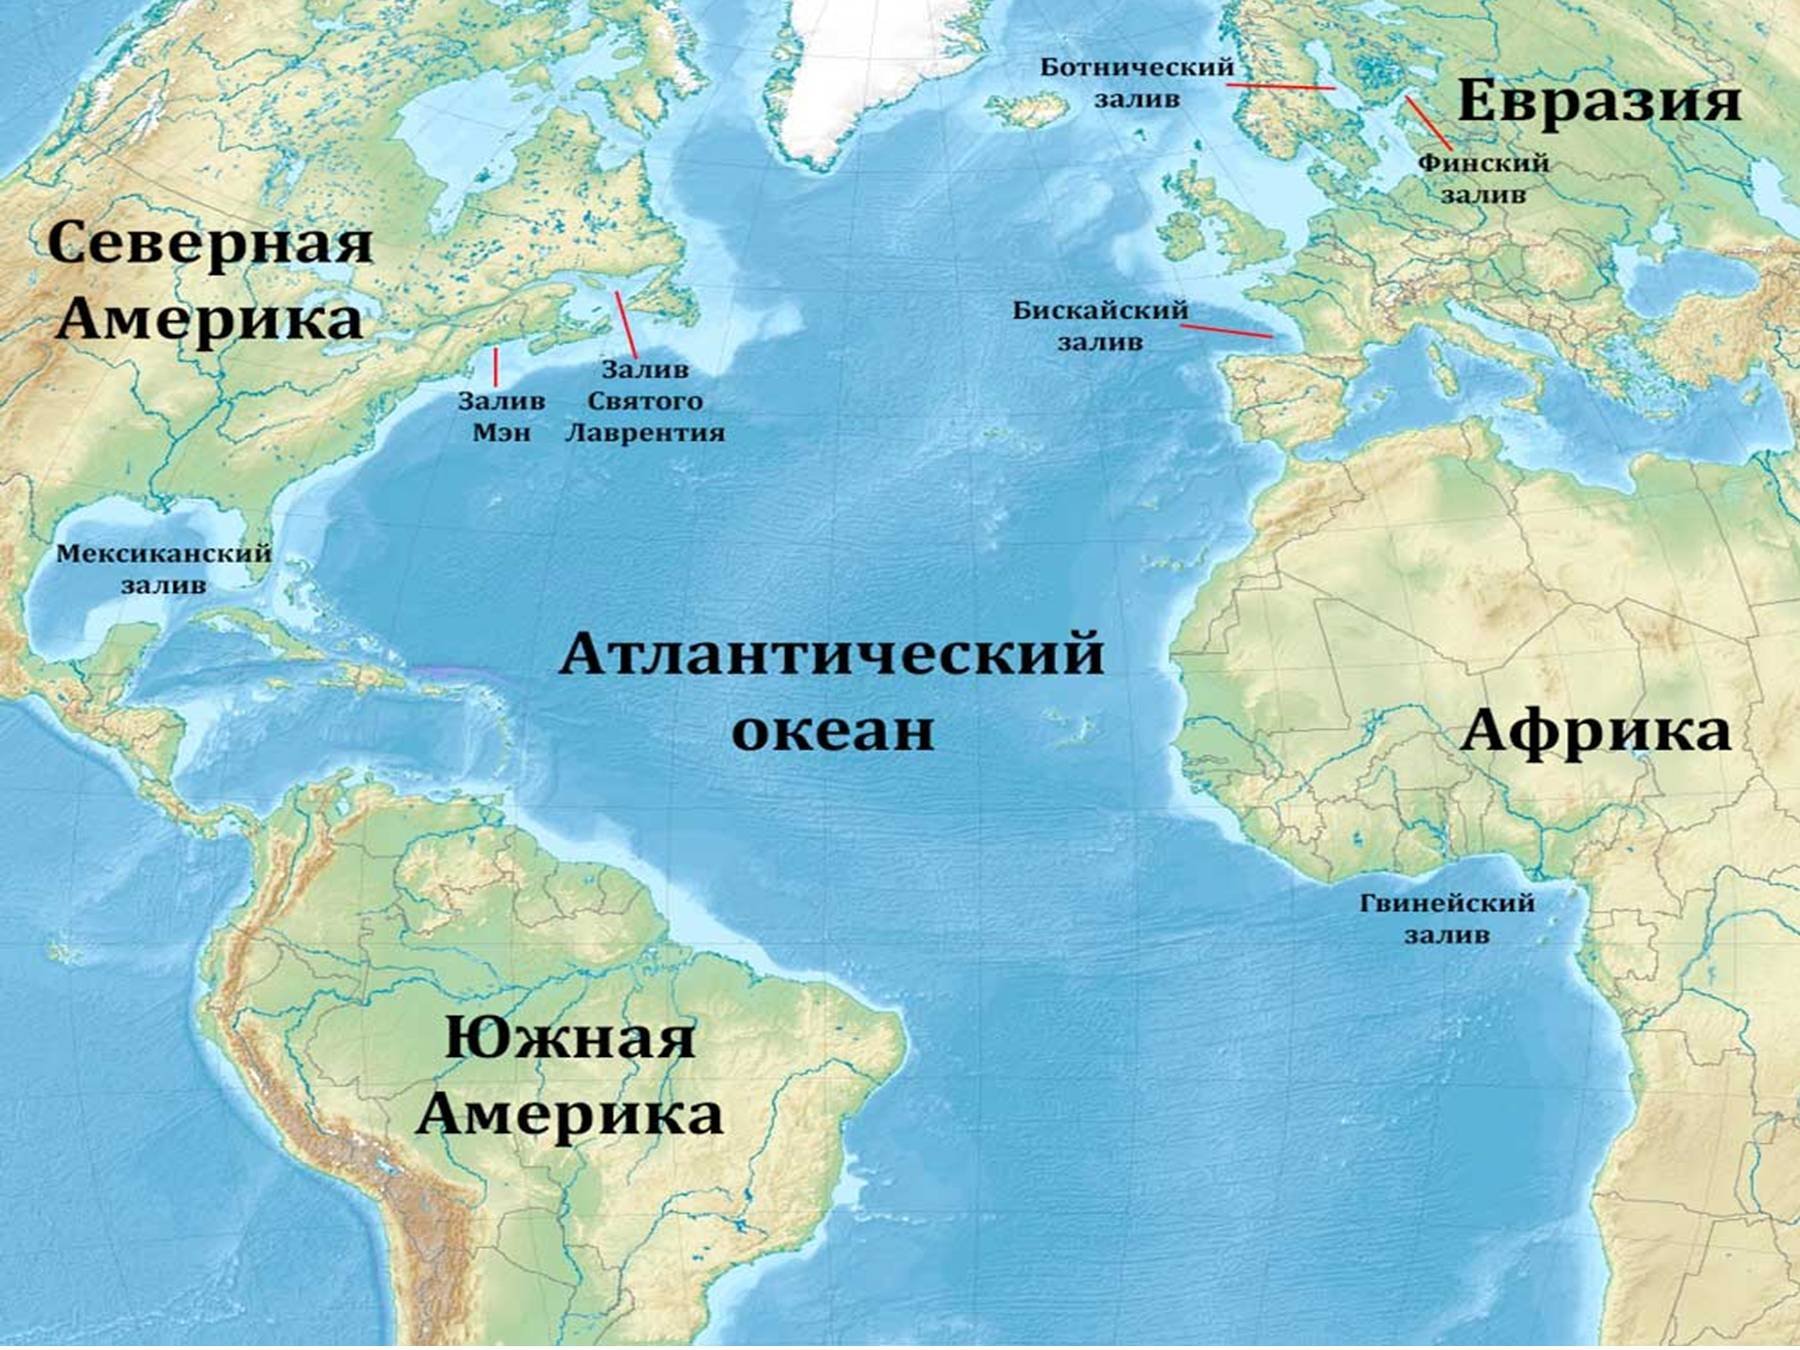 Океаны восточной европы. Расположение Атлантического океана на карте. Карта Атлантического океана с морями заливами и проливами. Атлантический океан на карте. Атлантический акеан на карте.